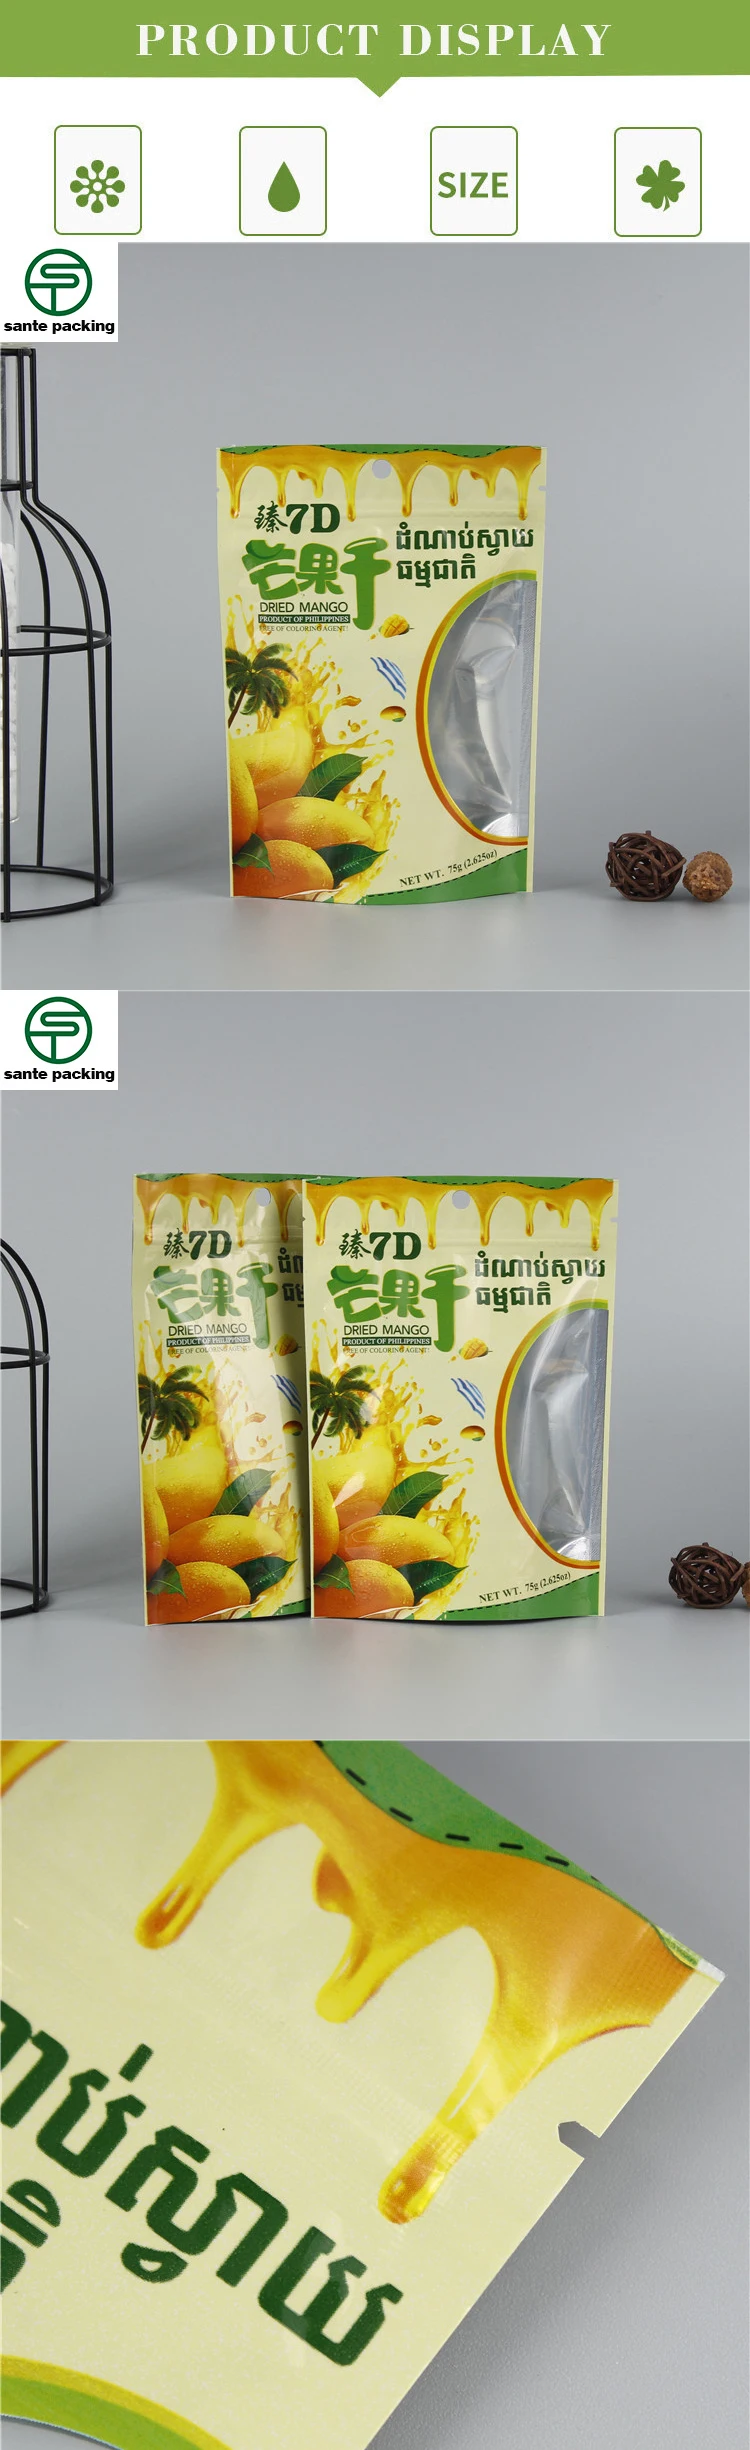 中国供应商定制设计印刷可再密封铝箔站起来拉链袋的食品包装